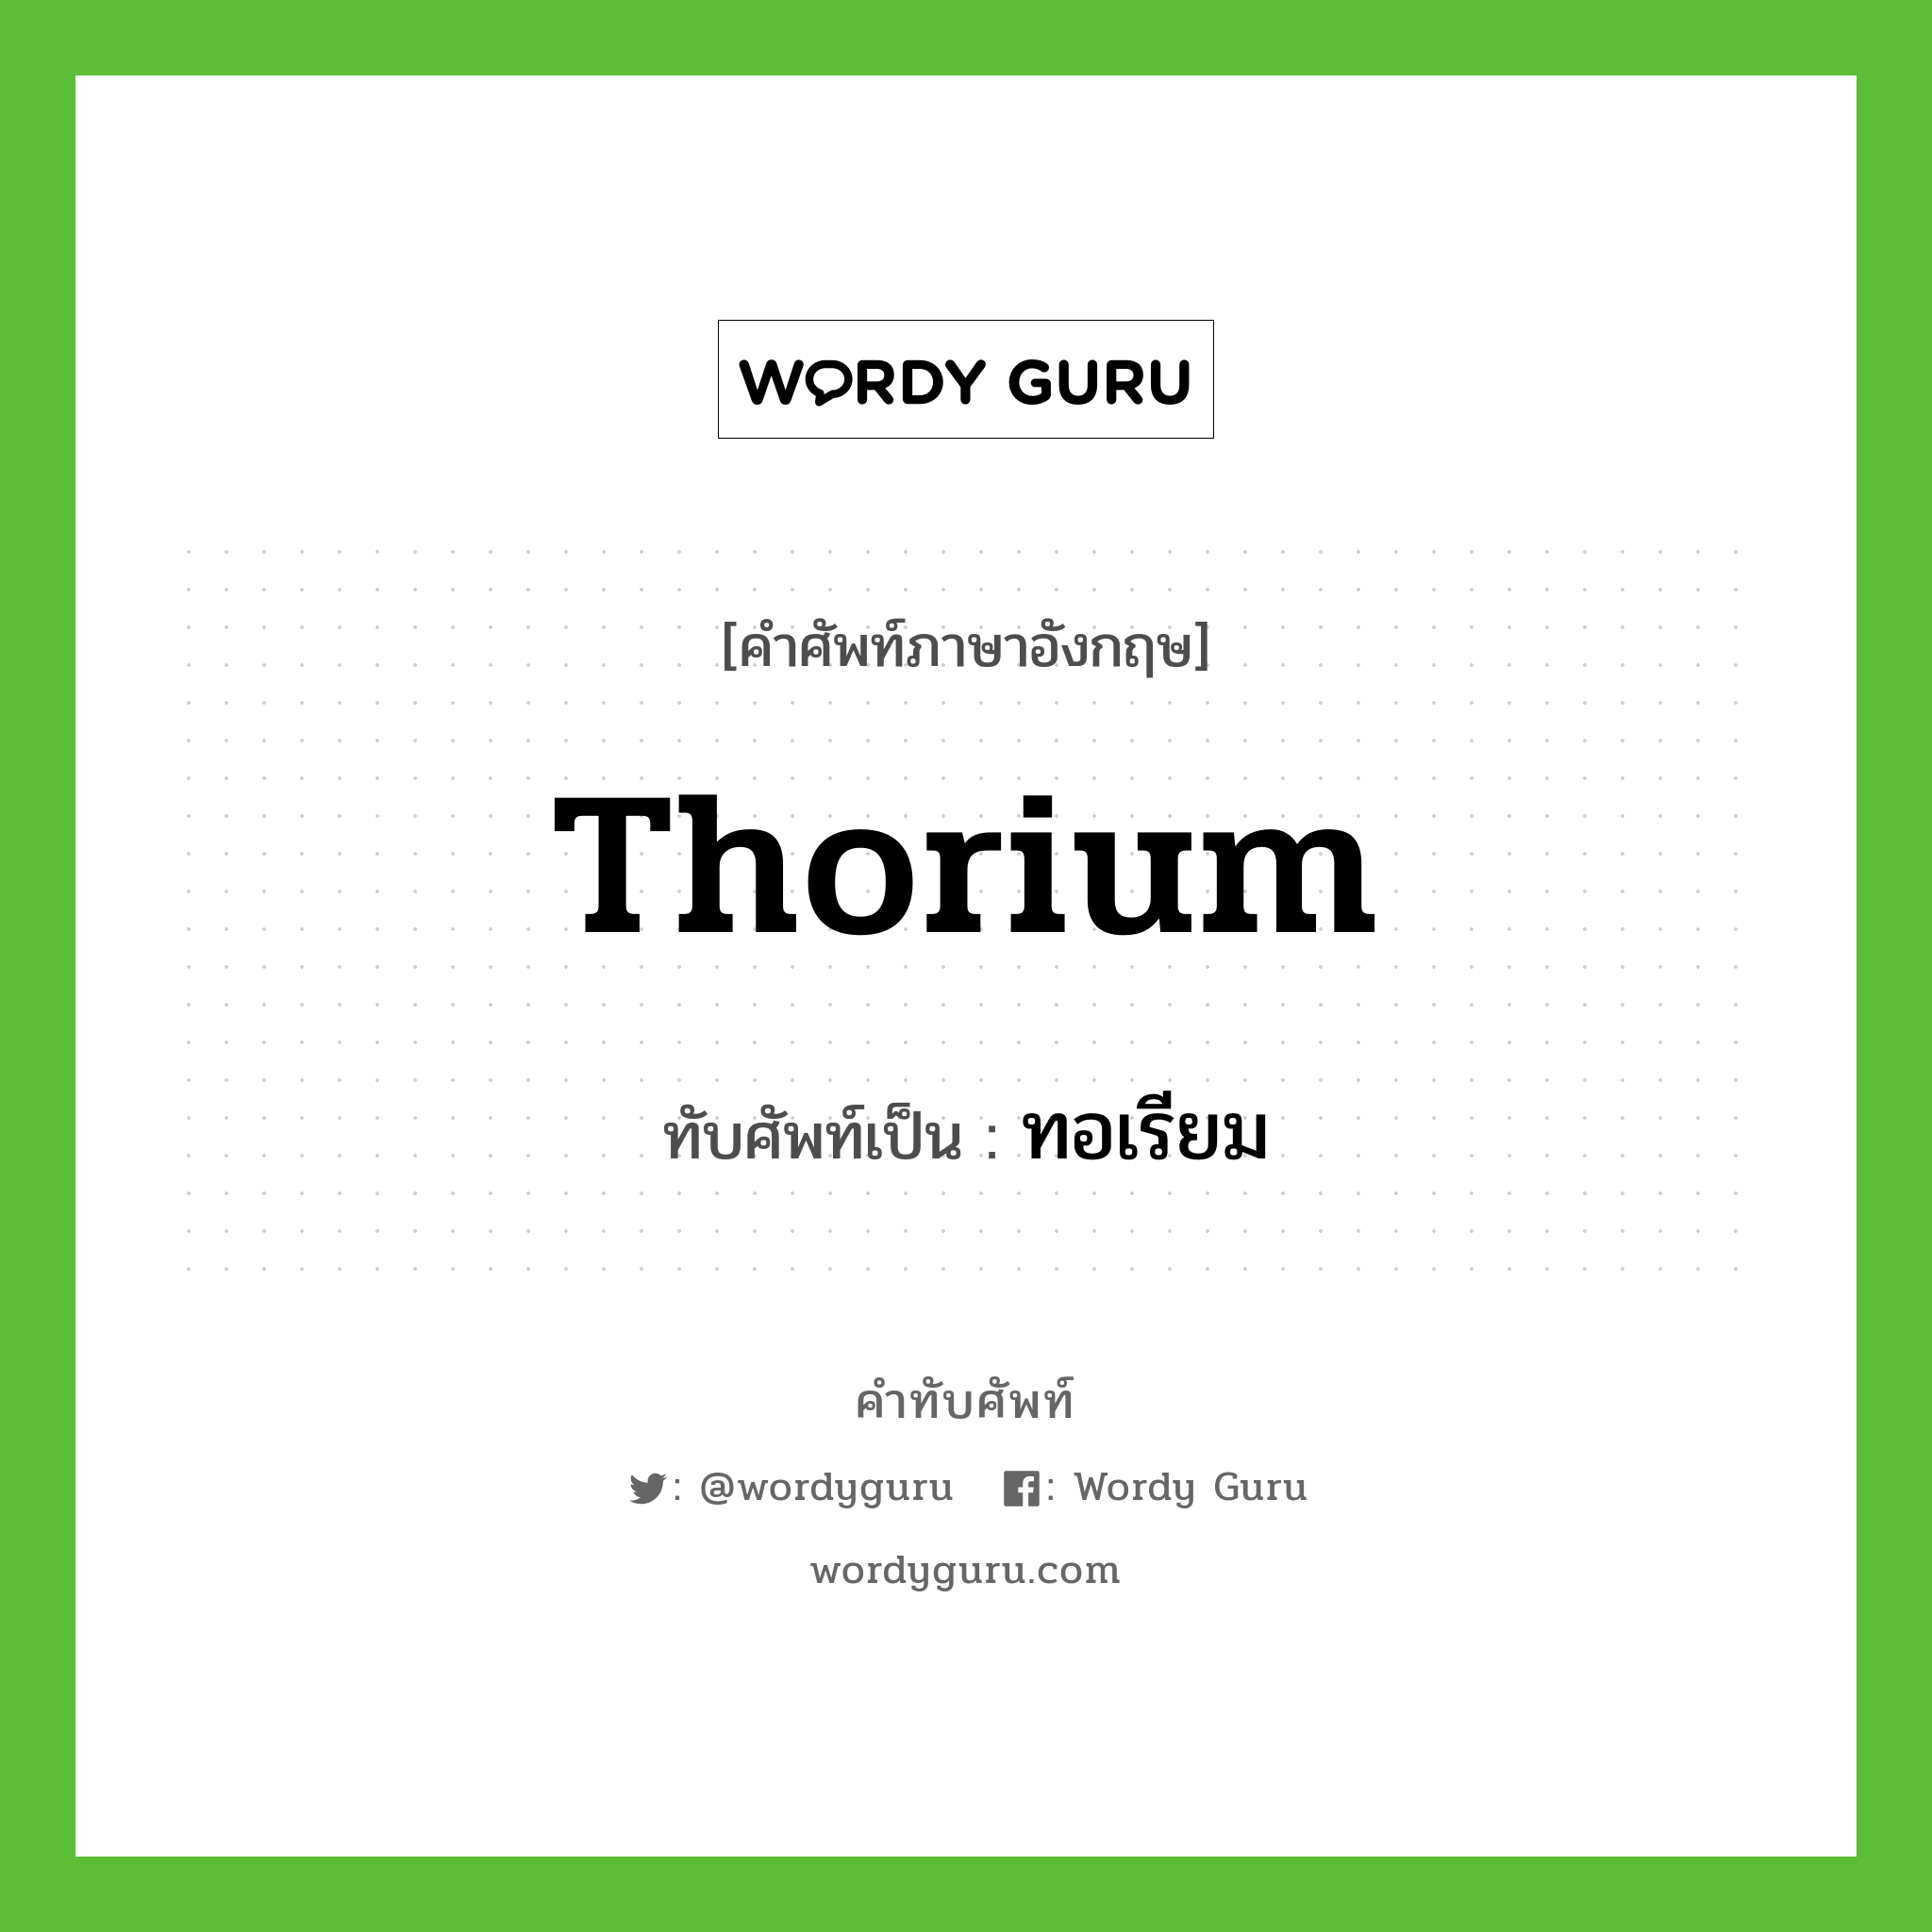 ทอเรียม เขียนอย่างไร?, คำศัพท์ภาษาอังกฤษ ทอเรียม ทับศัพท์เป็น thorium